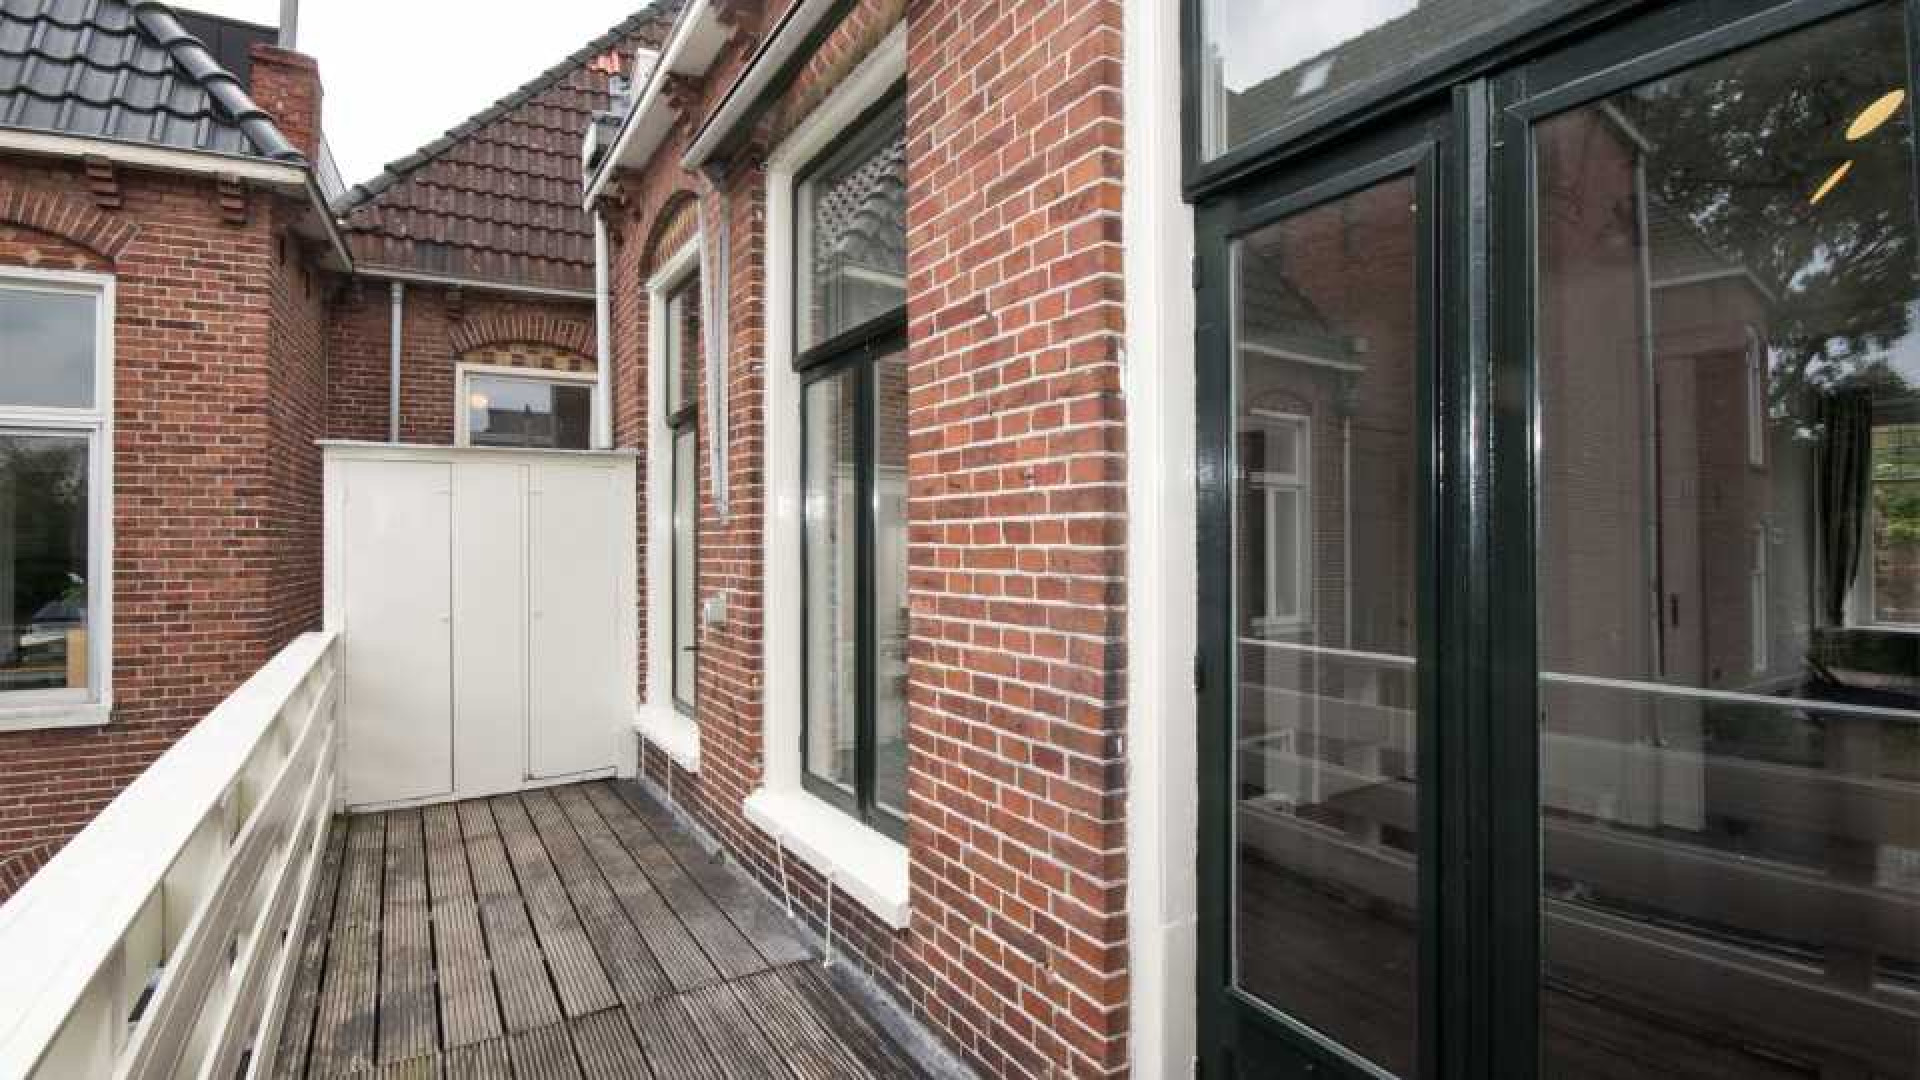 Victoria Koblenko en haar vriend Levchenko verkopen hun dubbel bovenhuis in Groningen. Zie foto's